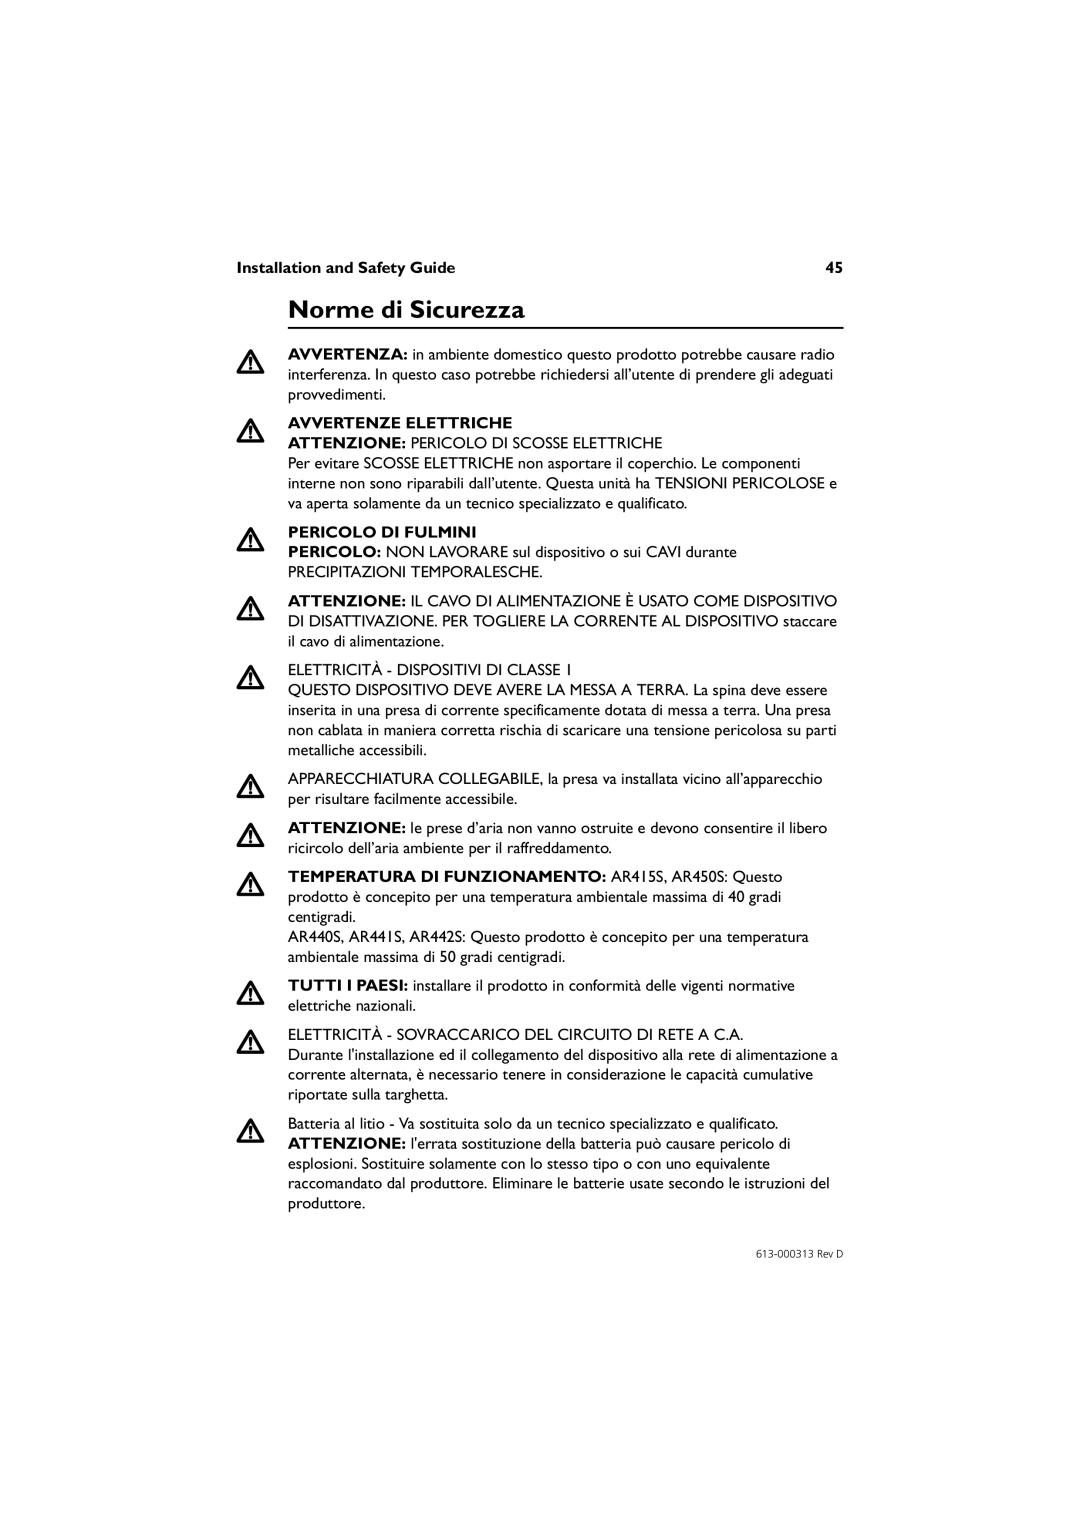 Allied Telesis AR442S manual Norme di Sicurezza, Avvertenze Elettriche, Pericolo Di Fulmini, Installation and Safety Guide 